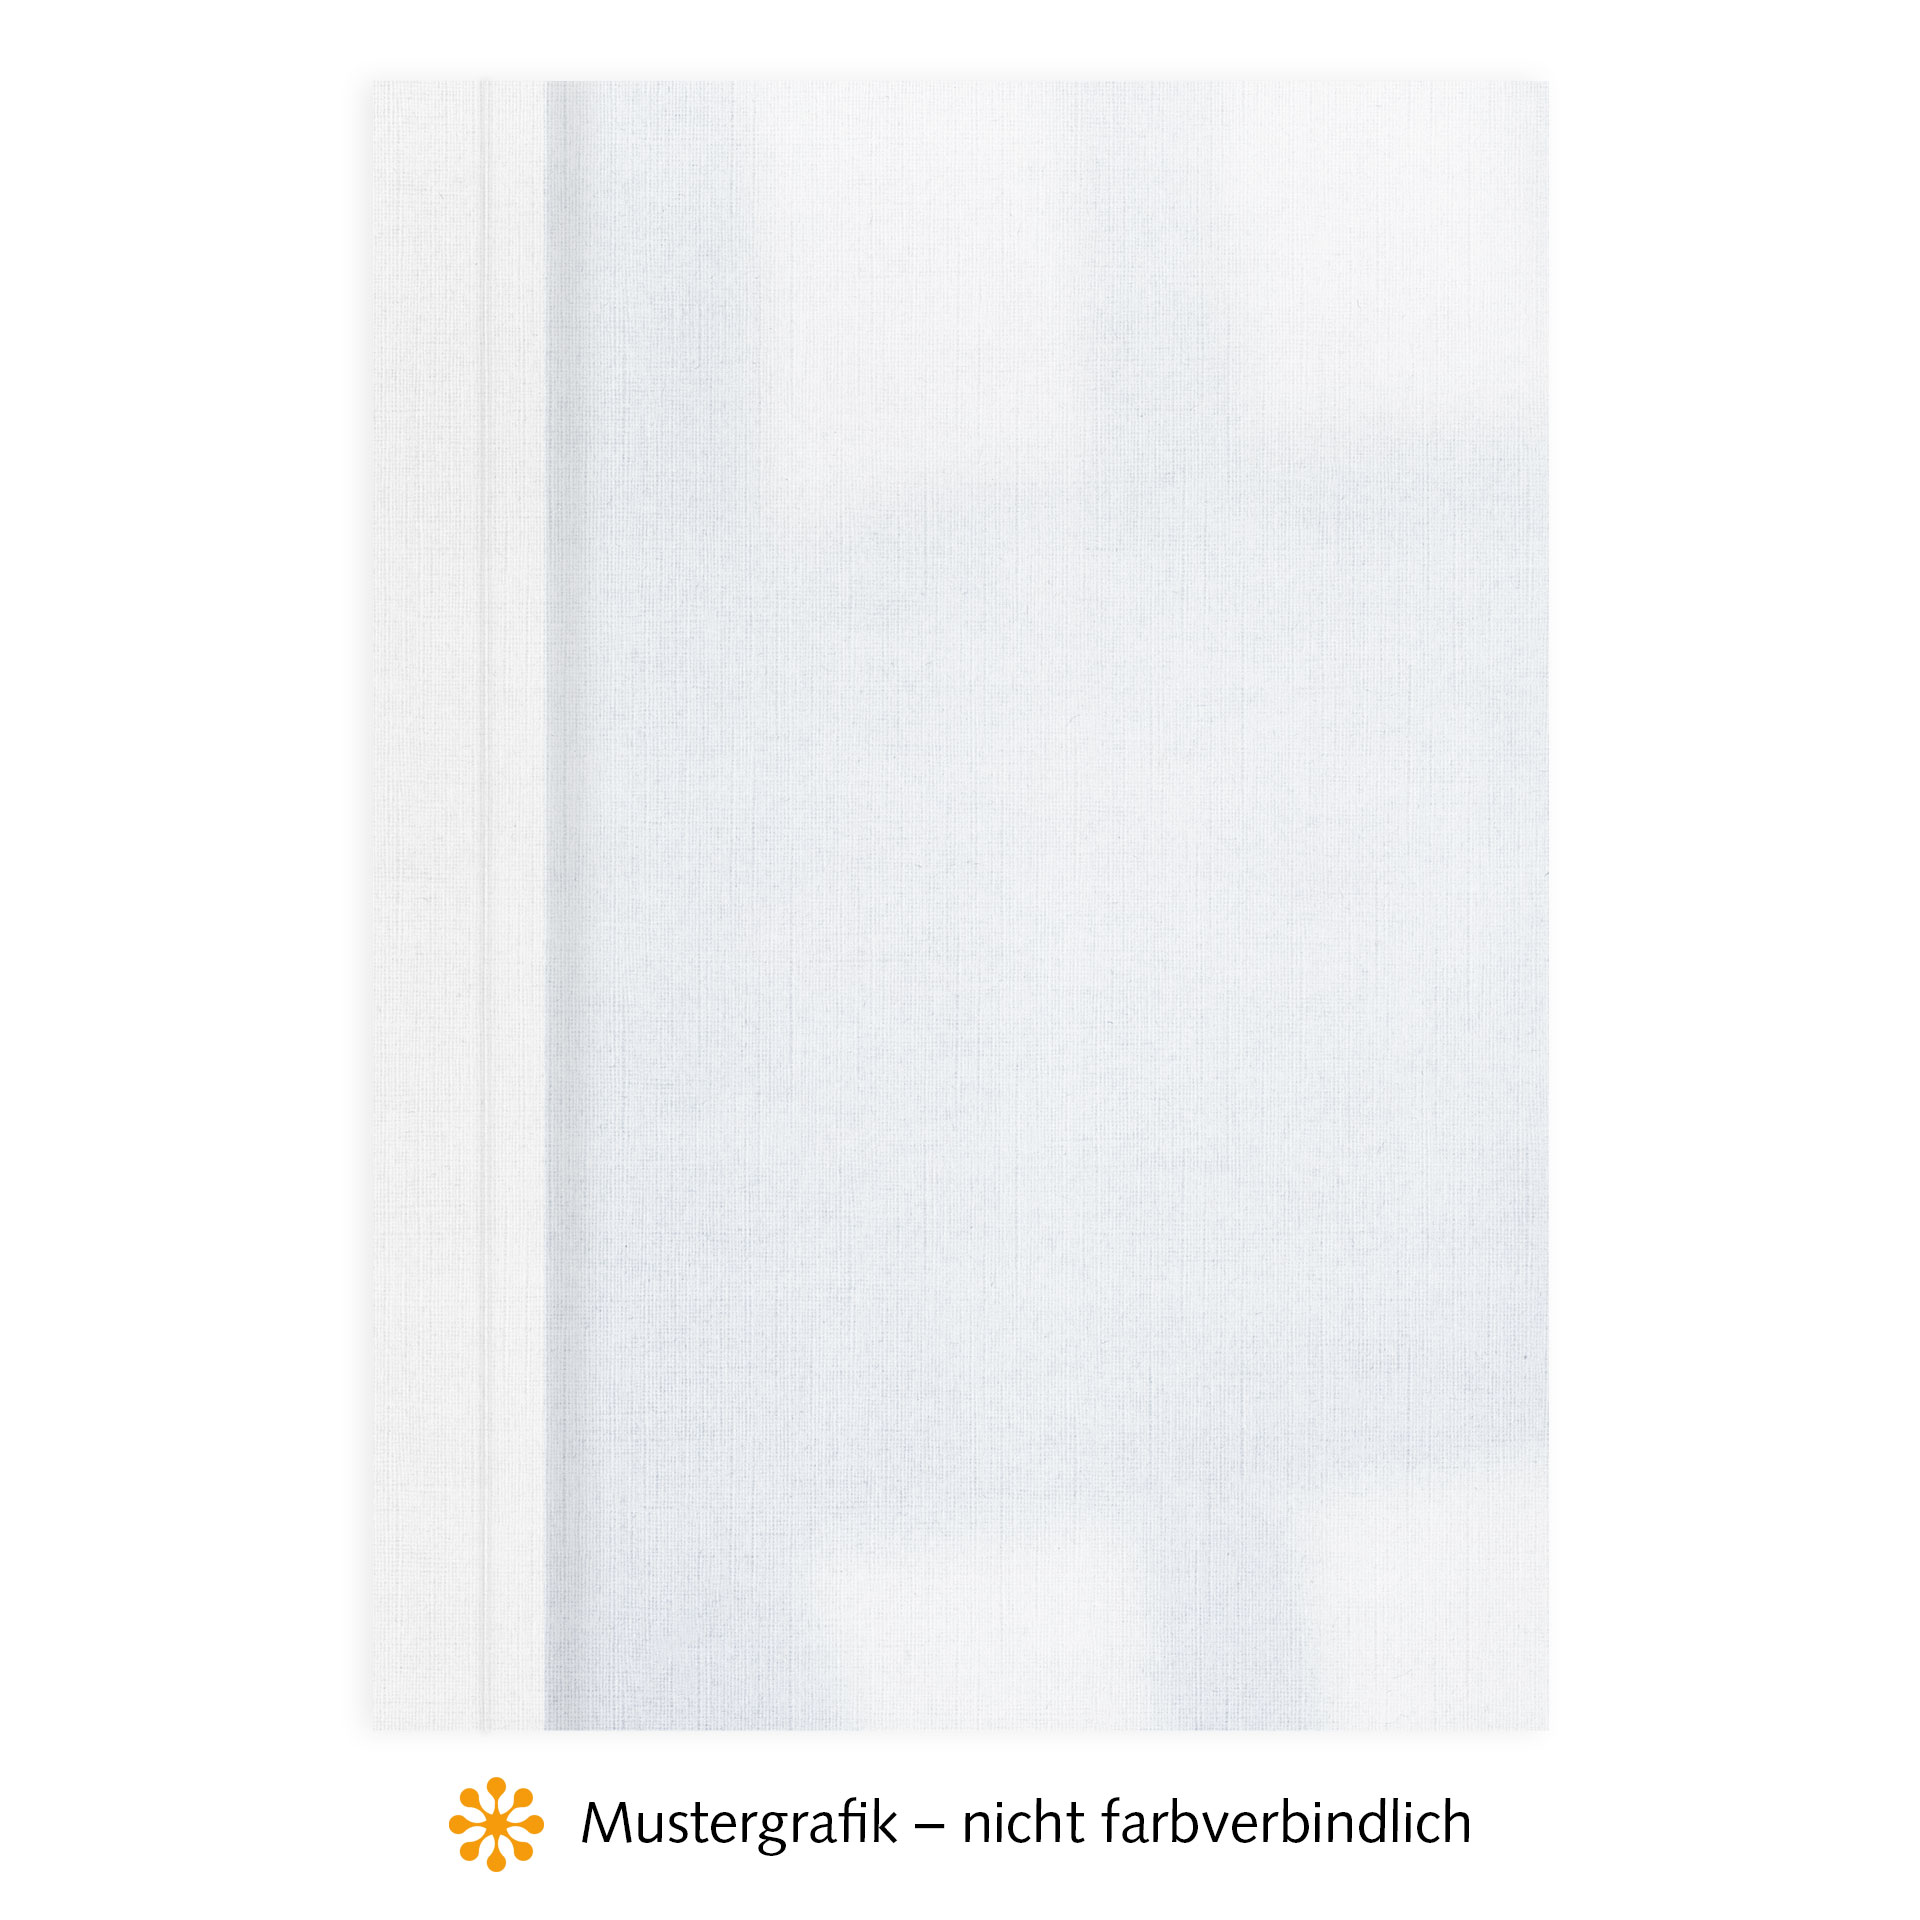 Ösenmappen DUO Cover, Vorderseite Folie KLAR transparent, Rückseite Karton Leinen, Weiß, 3 mm, 21 bis 30 Blatt